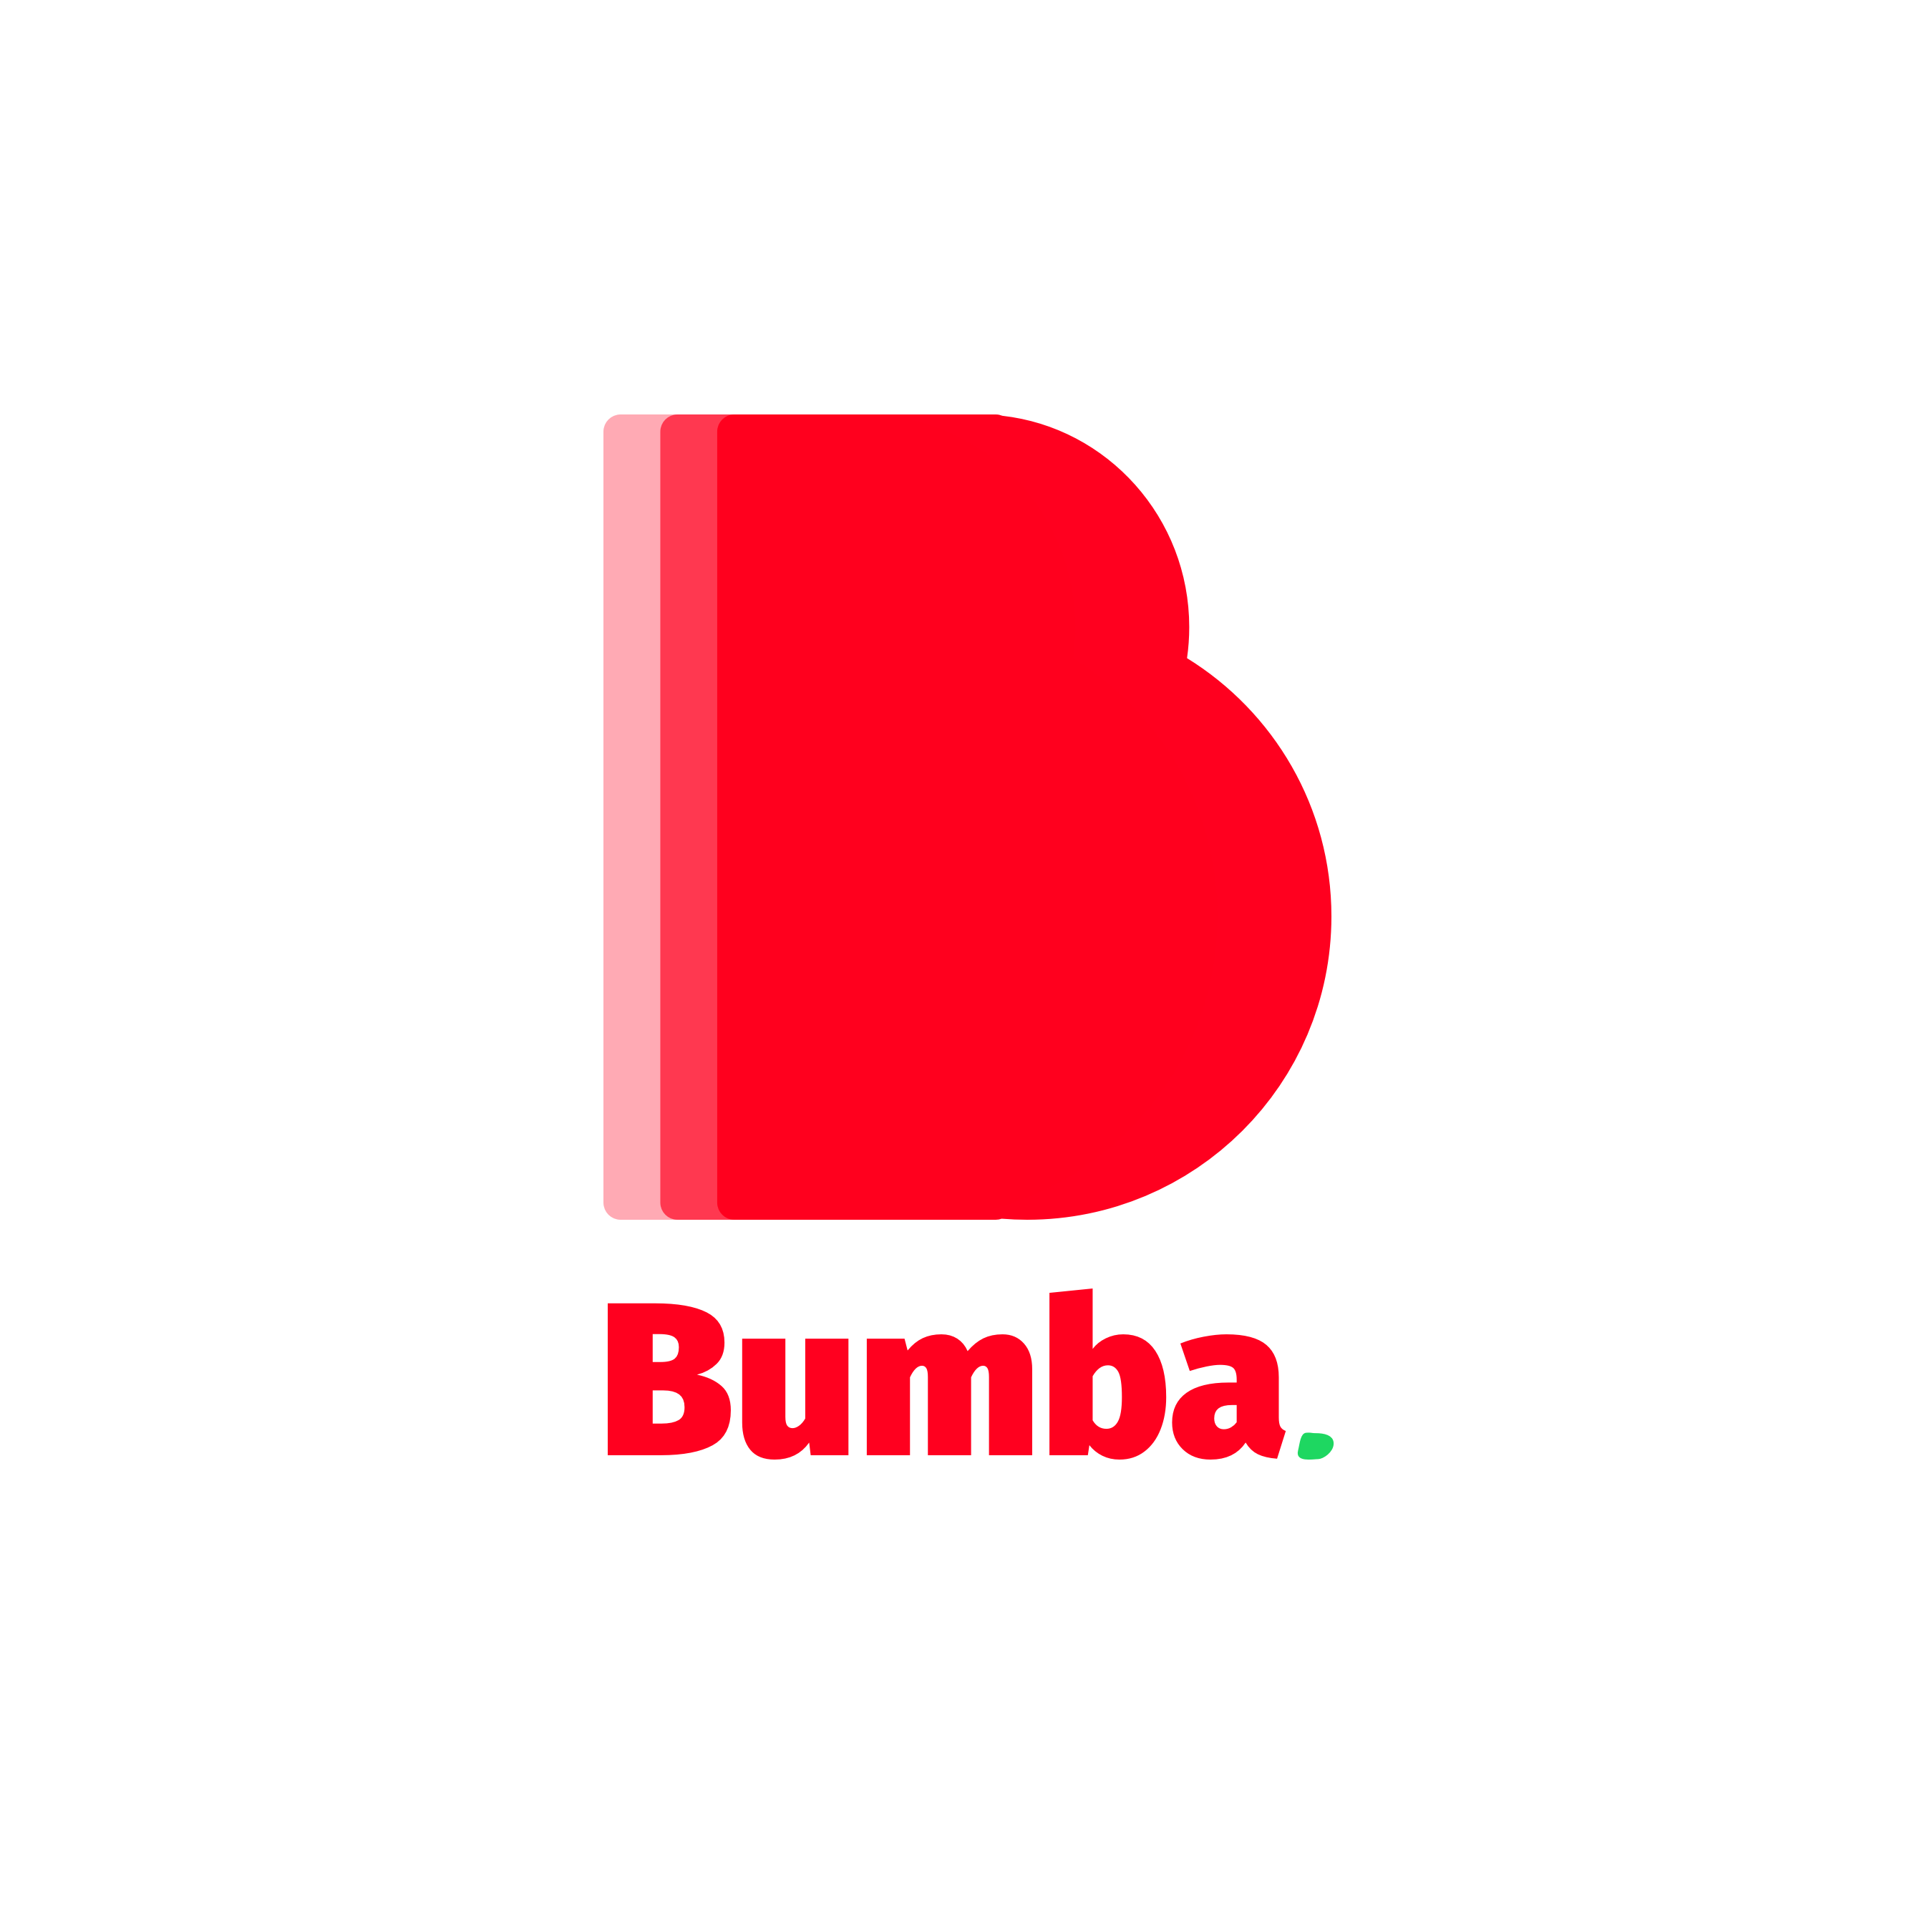 Radio Bumba